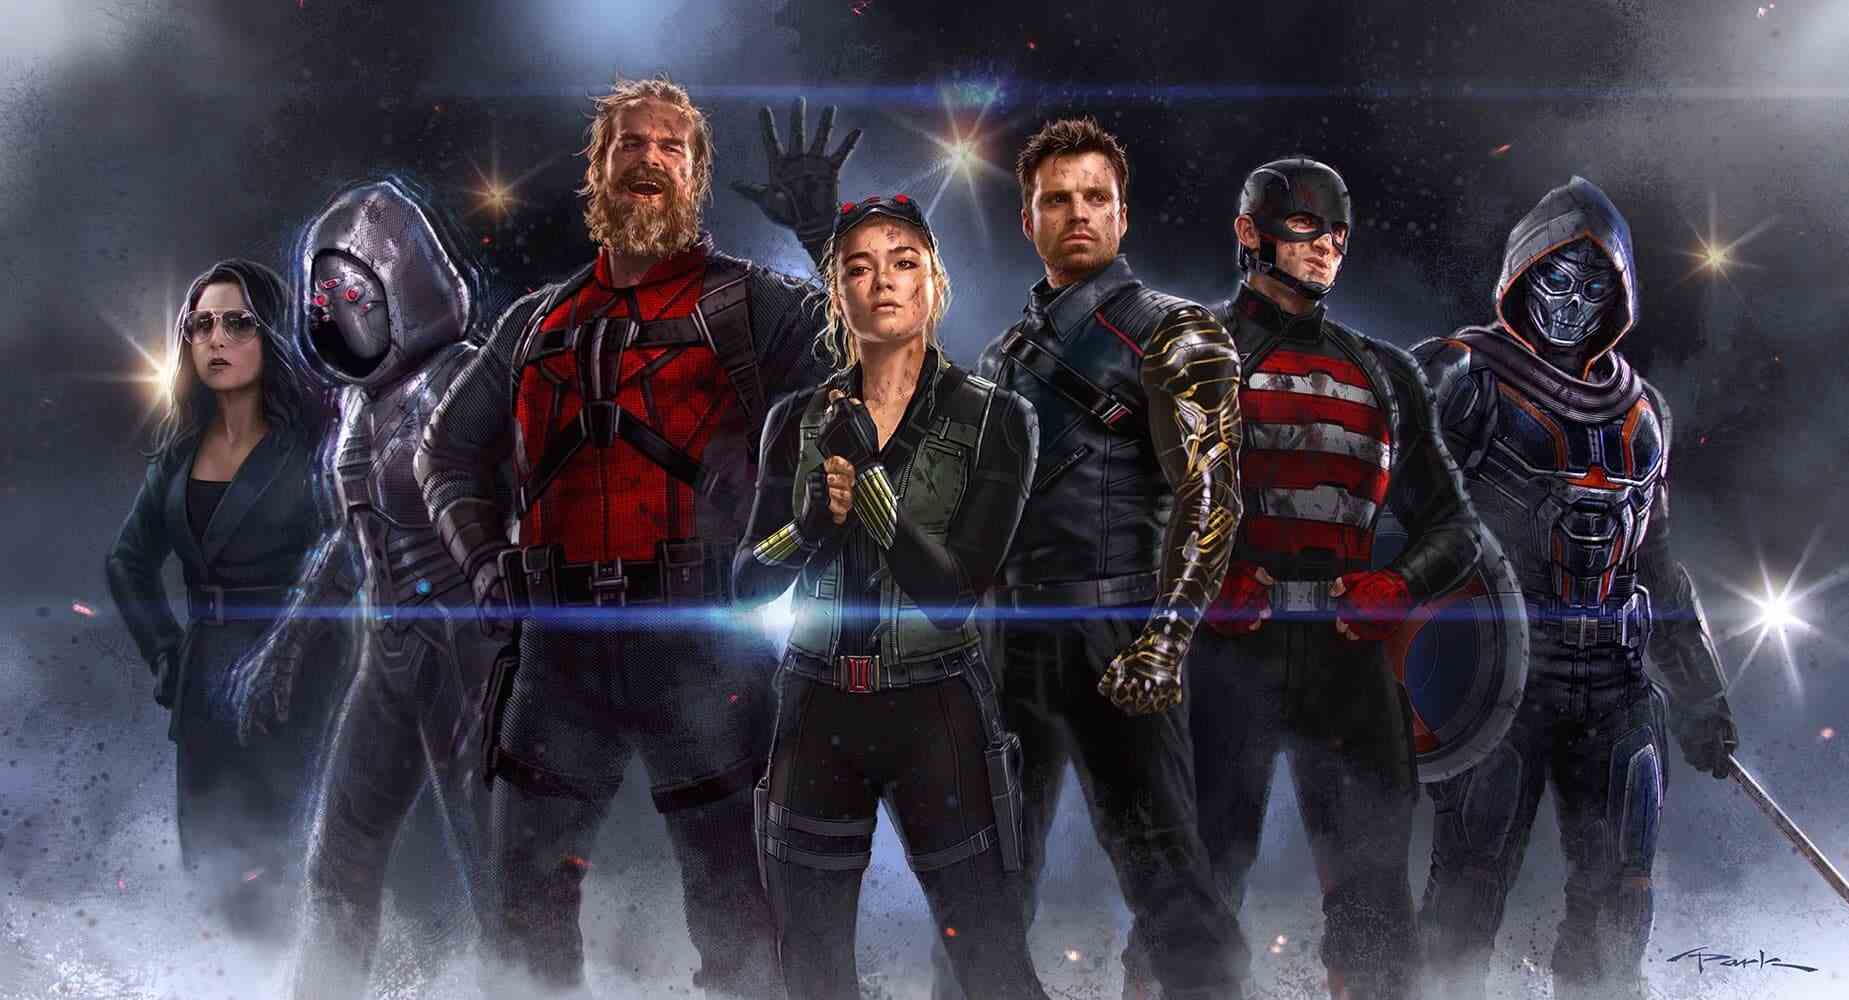 Marvel Cinematic Universe MCU wird abgeschottet und exklusiv mit Superhelden-Heldenmarken wie Captain America, Black Widow, Marvels, braucht neue Marken und Charaktere Thunderbolts